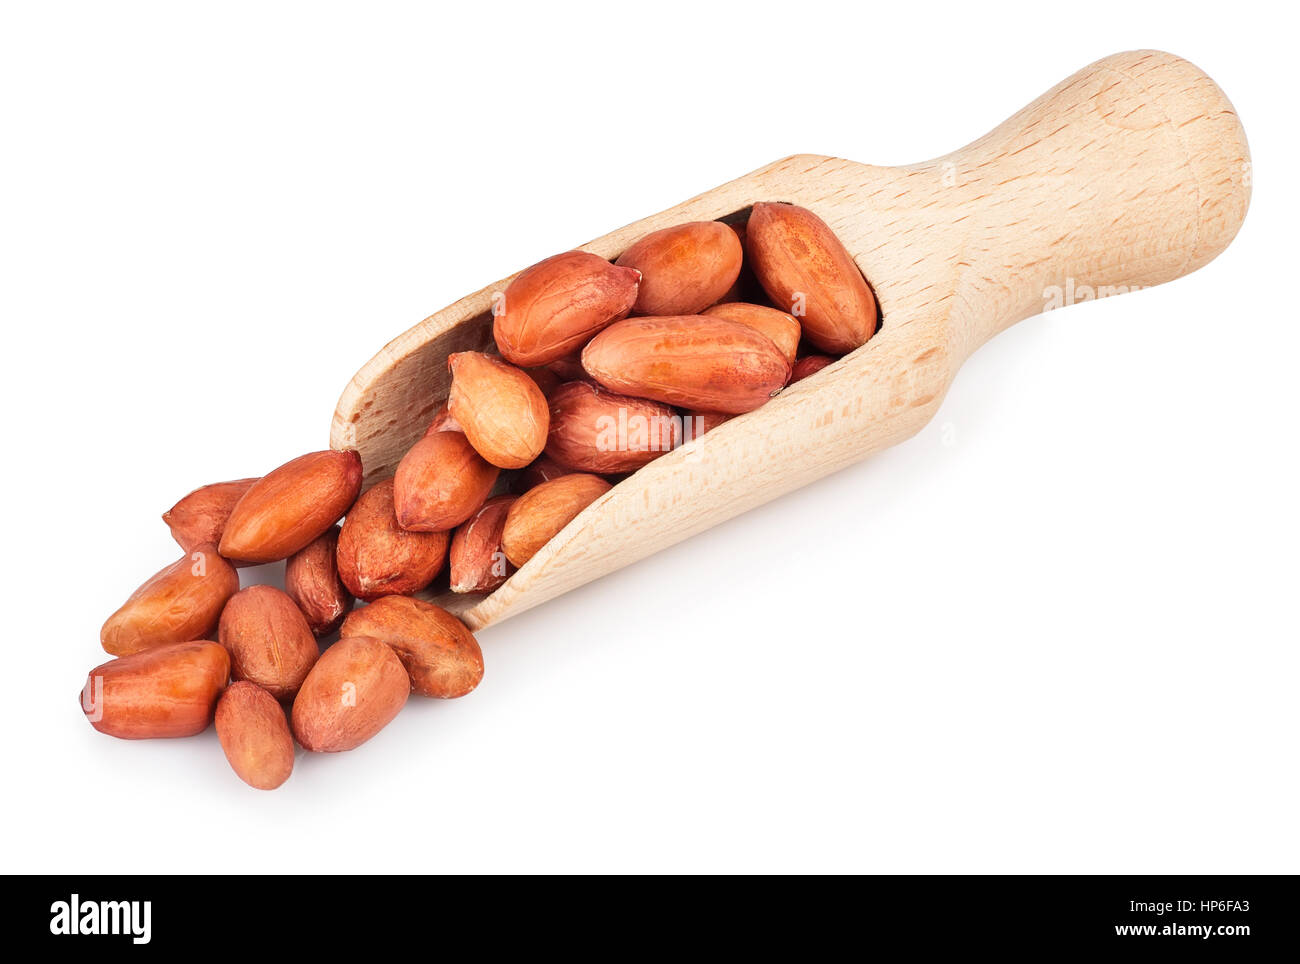 Erdnuss in hölzerne Schaufel isoliert auf weißem Hintergrund. Rohe Erdnüsse in Kochlöffel auf weißem Hintergrund Stockfoto